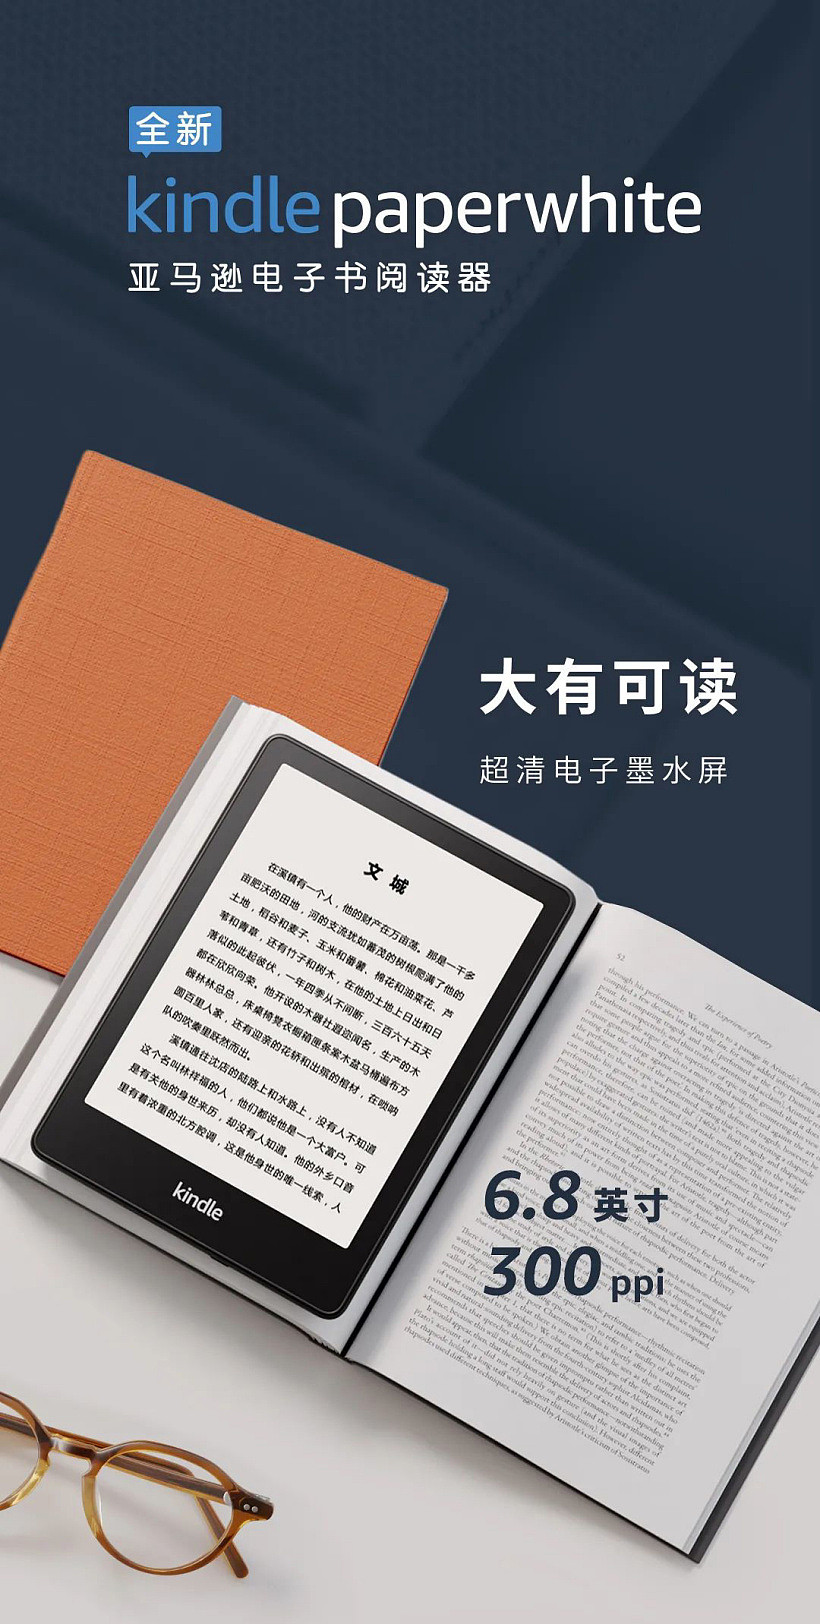 1068 元，亚马逊全新 Kindle Paperwhite 发布：6.8 英寸超清电子墨水屏，可调节冷暖光，USB-C 接口，IPX8 级防水 - 1